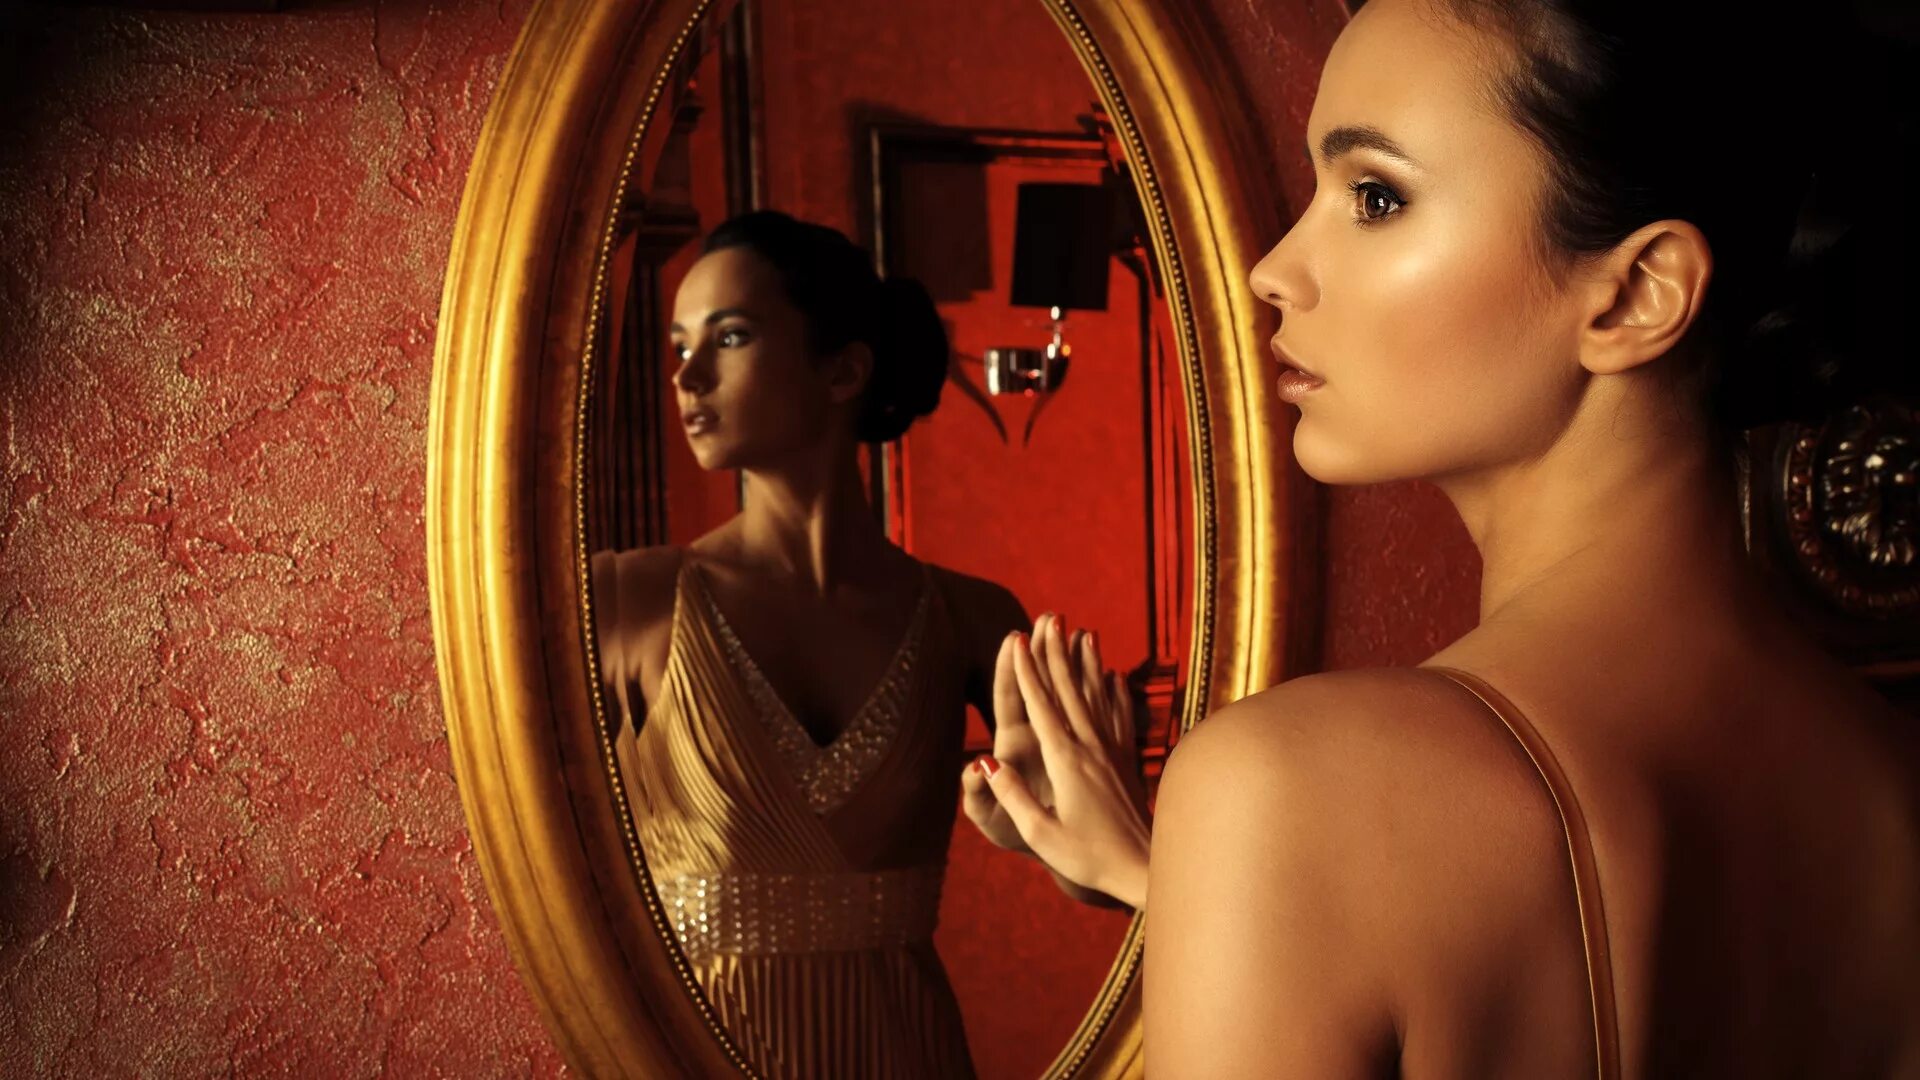 Reflection woman. Женщина передхеркалом. Левушка перед зеркалом. Женщина смотрится в зеркало. Отражение в зеркале.